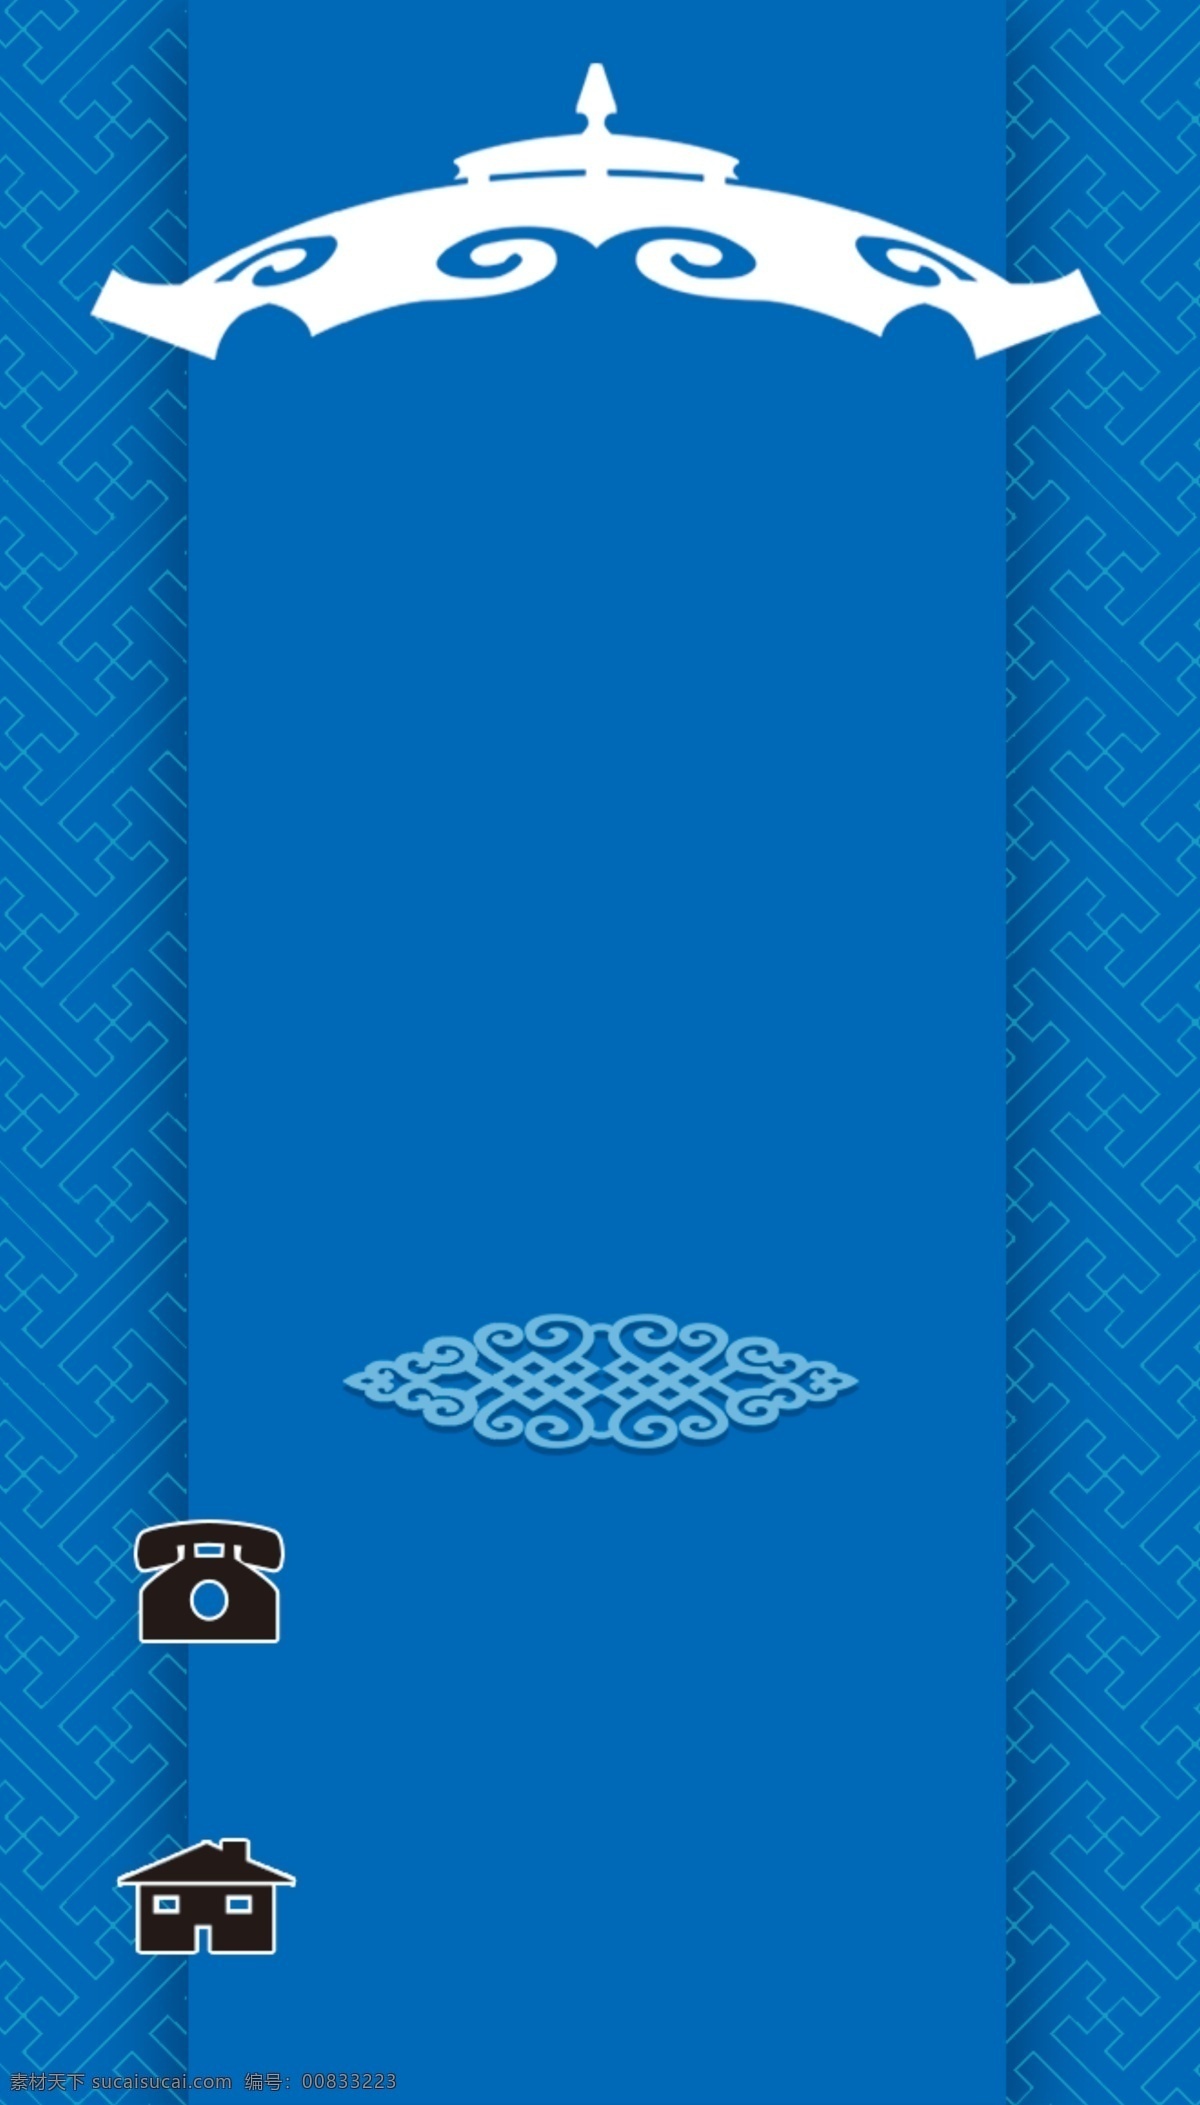 名片设计图片 蒙古名片 蒙古花纹 蒙古元素 电话 蒙古包 分层